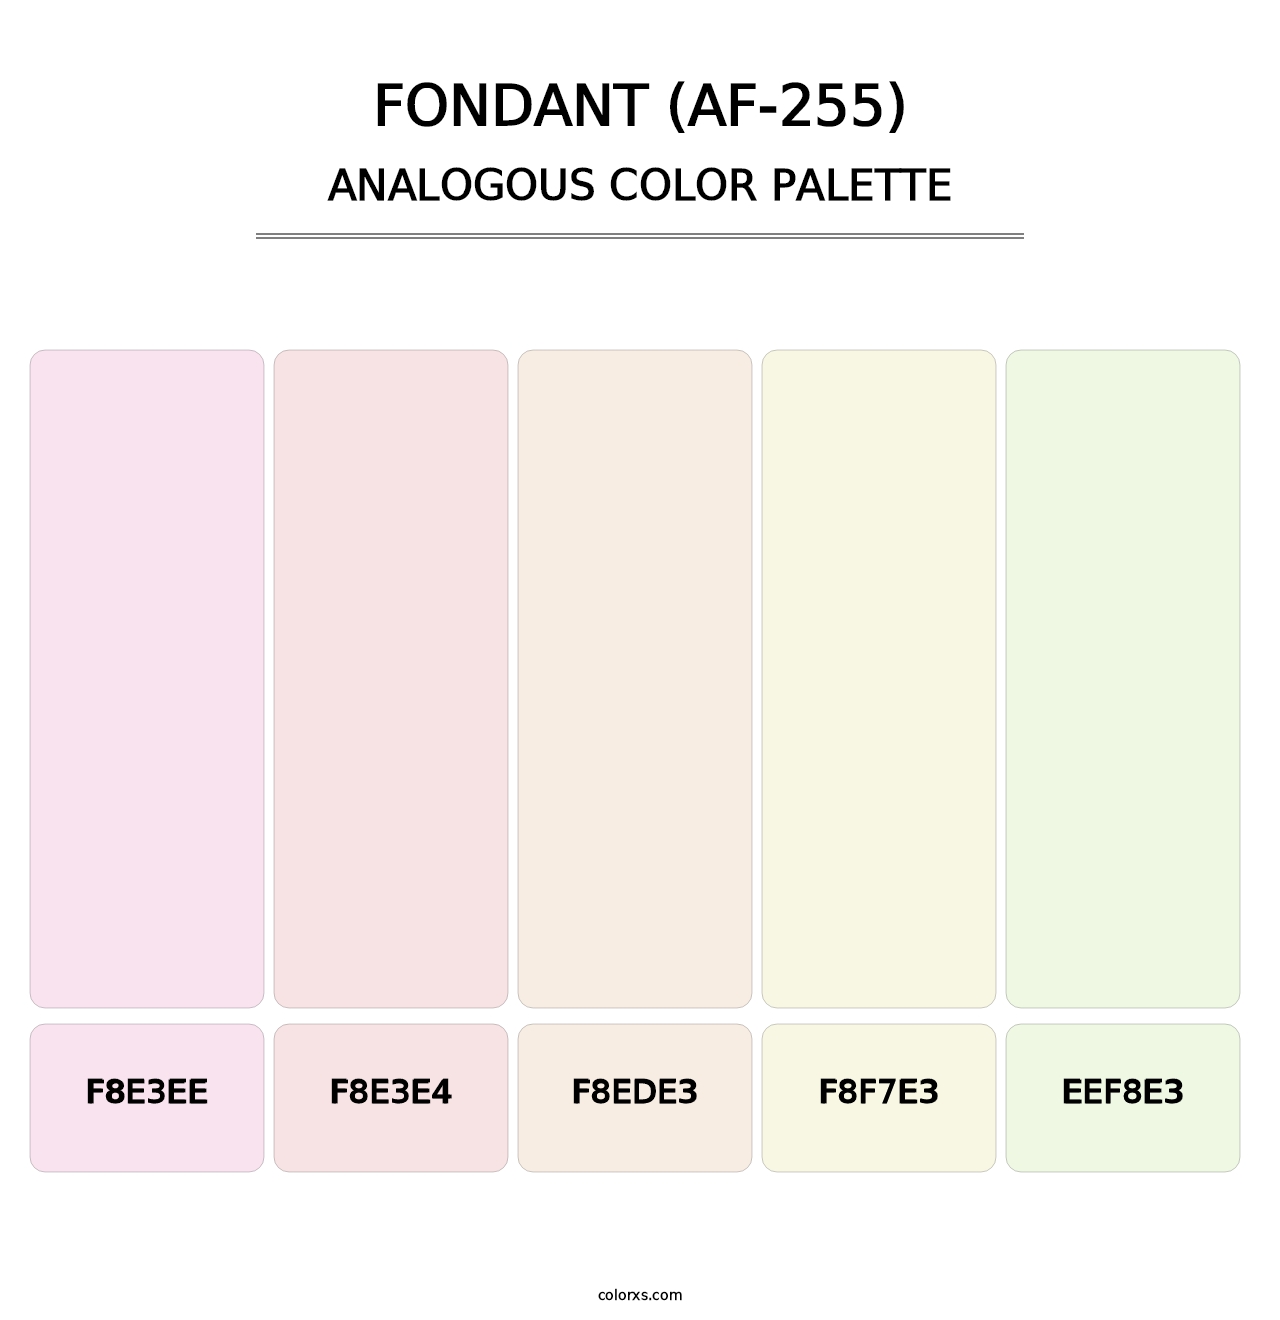 Fondant (AF-255) - Analogous Color Palette